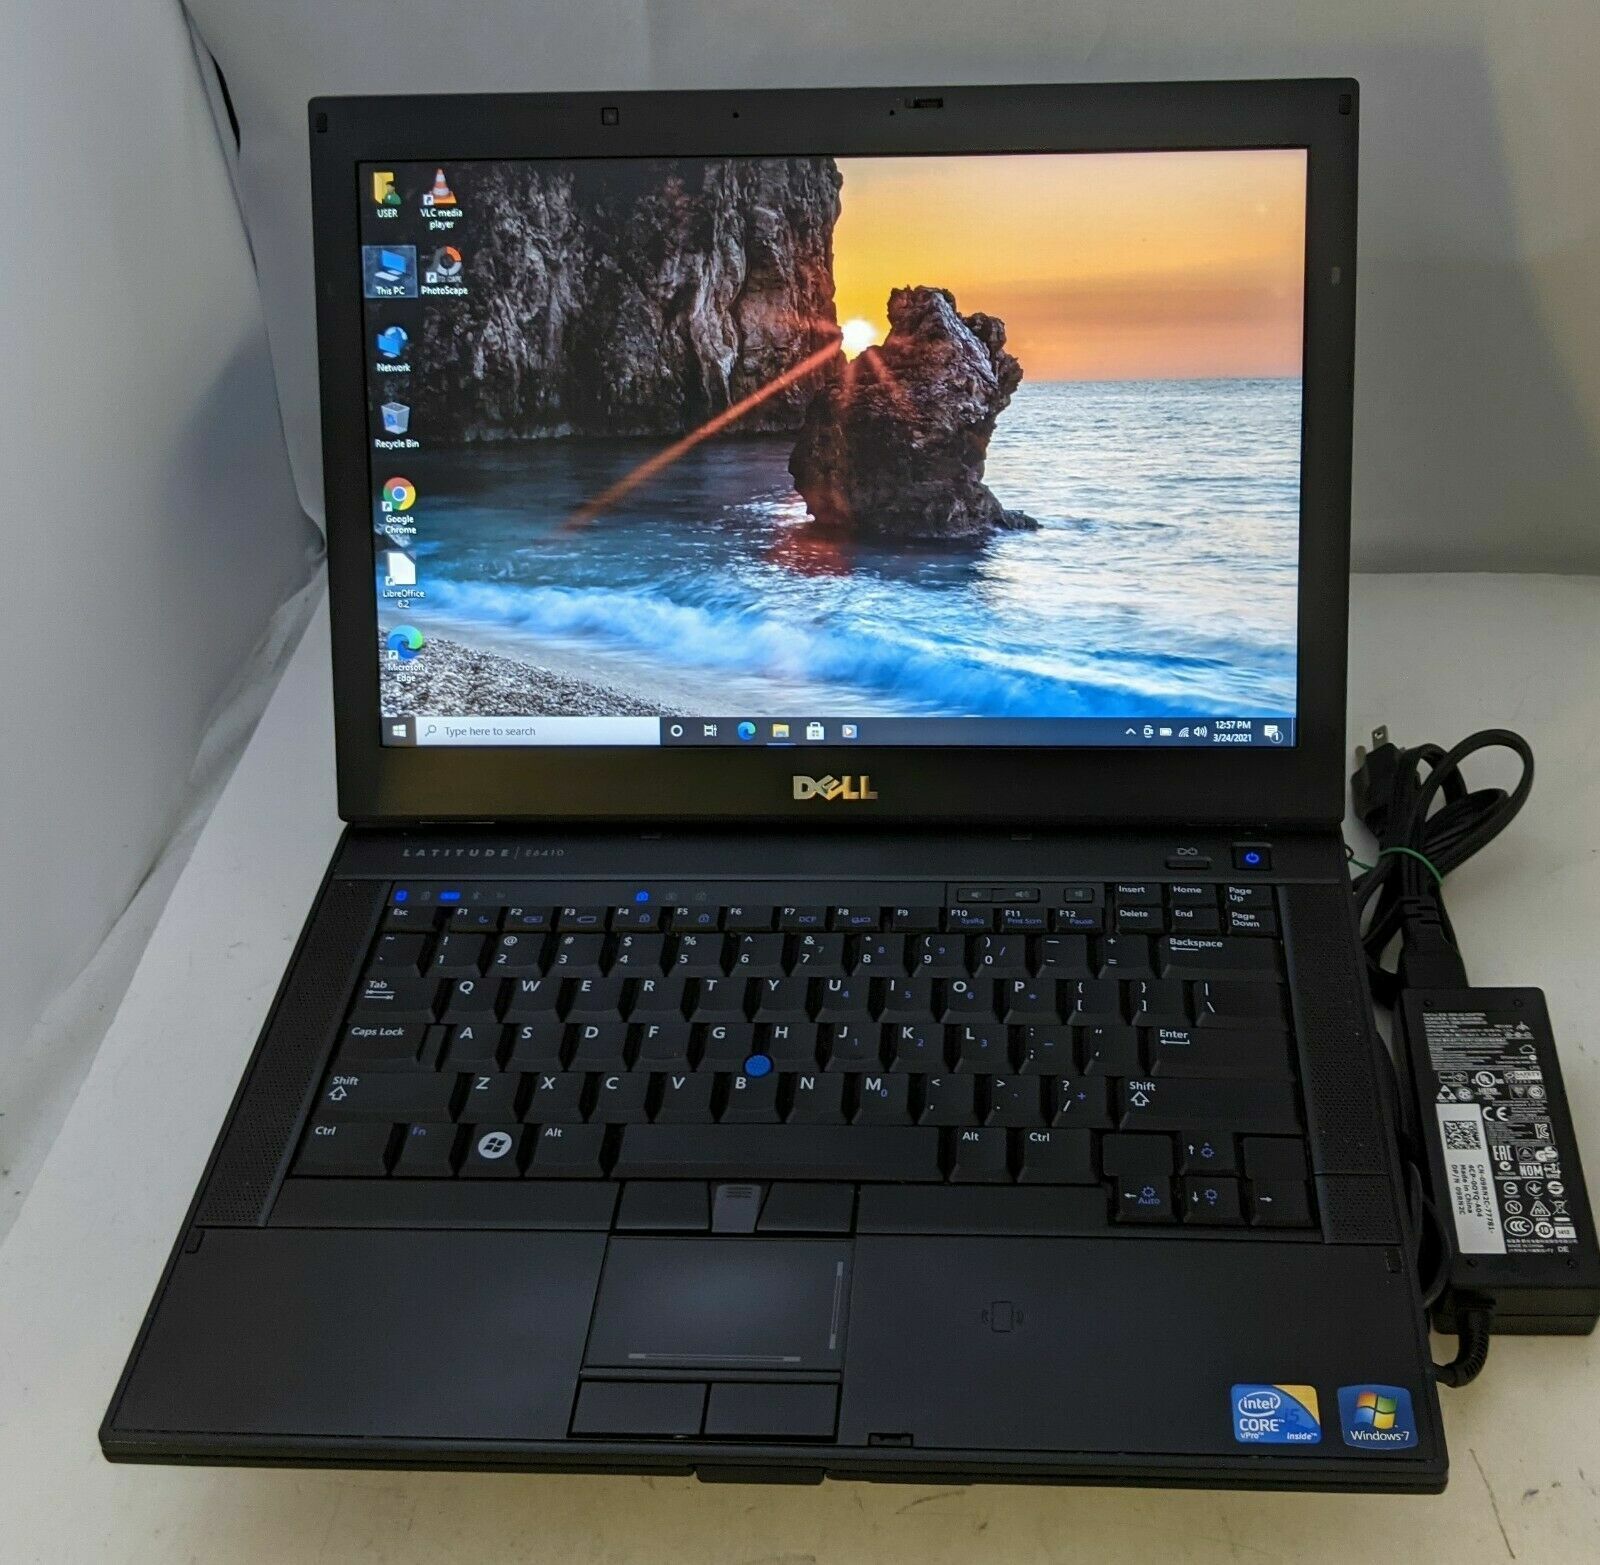 Dell Latitude E6410 Laptop Intel Core i5-2.53GHz 4GB 250GB DVD-RW WiFi Win10